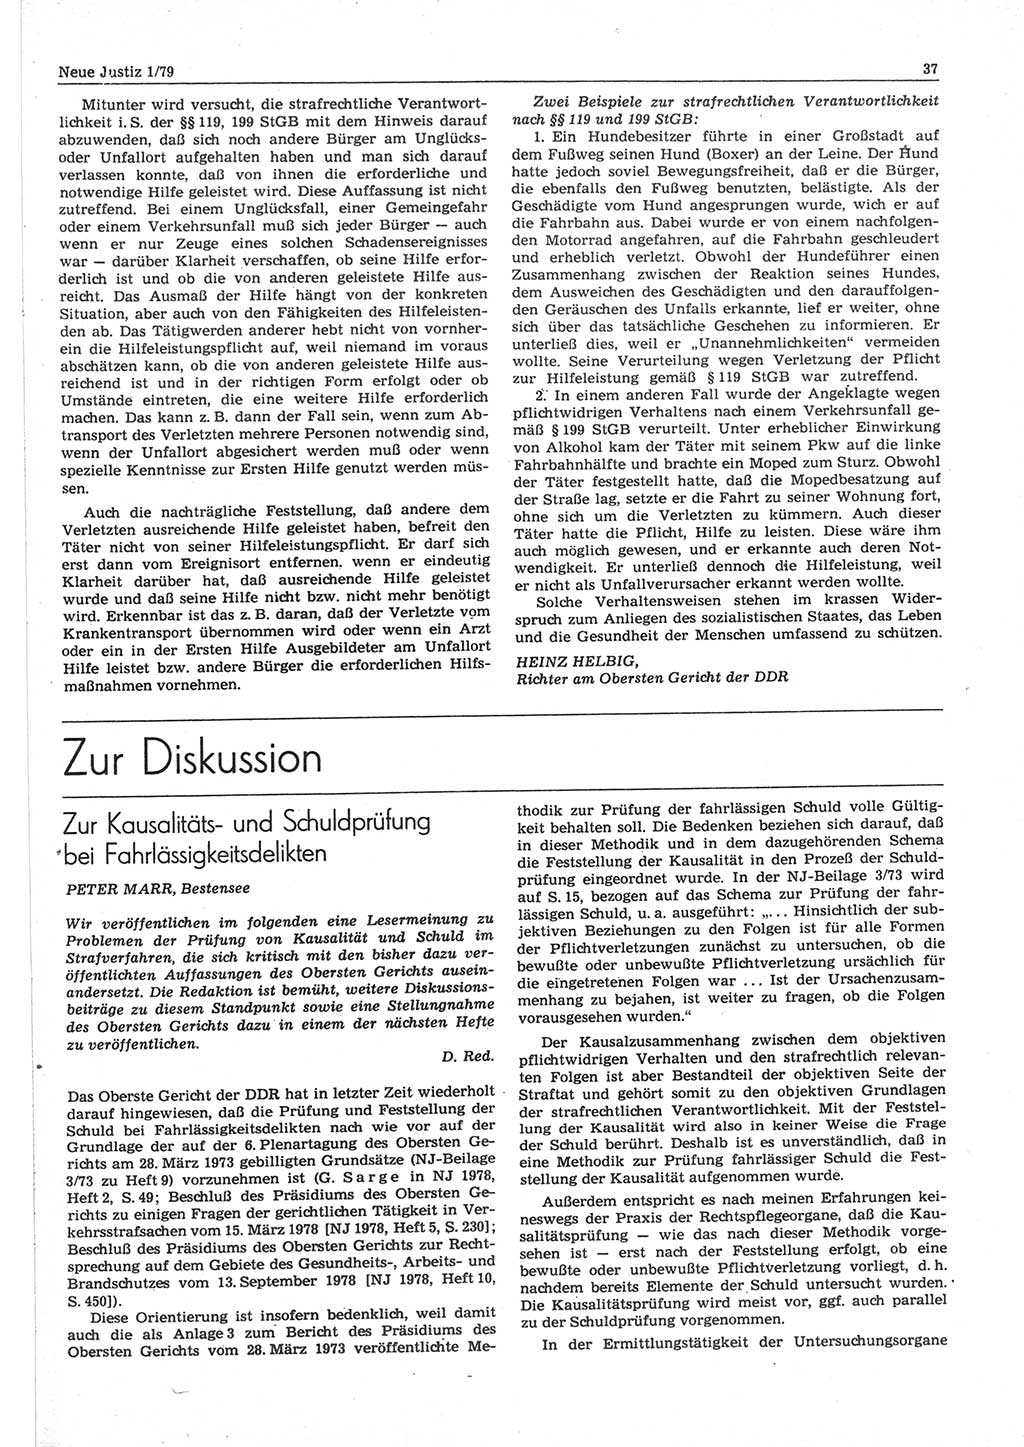 Neue Justiz (NJ), Zeitschrift für sozialistisches Recht und Gesetzlichkeit [Deutsche Demokratische Republik (DDR)], 33. Jahrgang 1979, Seite 37 (NJ DDR 1979, S. 37)